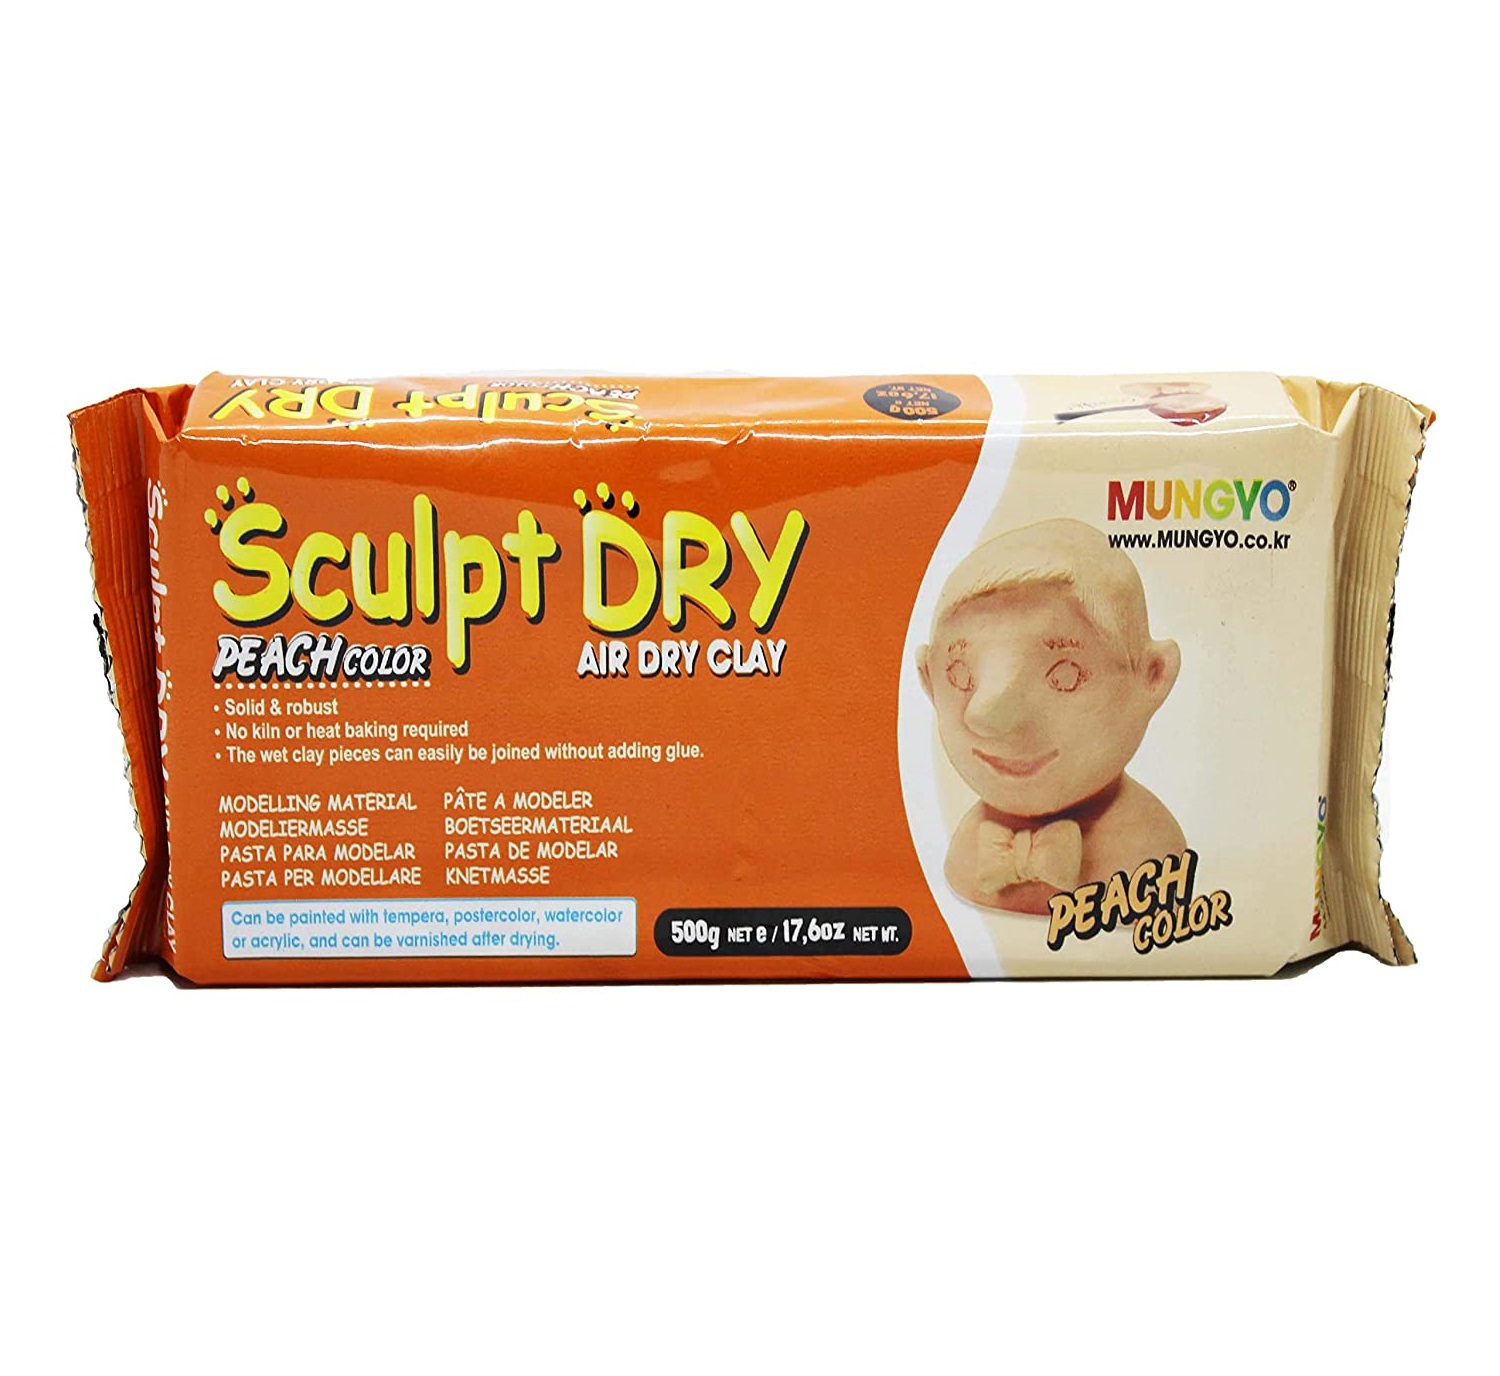 Mungyo Sculpt Dry Clay - Air Dry Peach